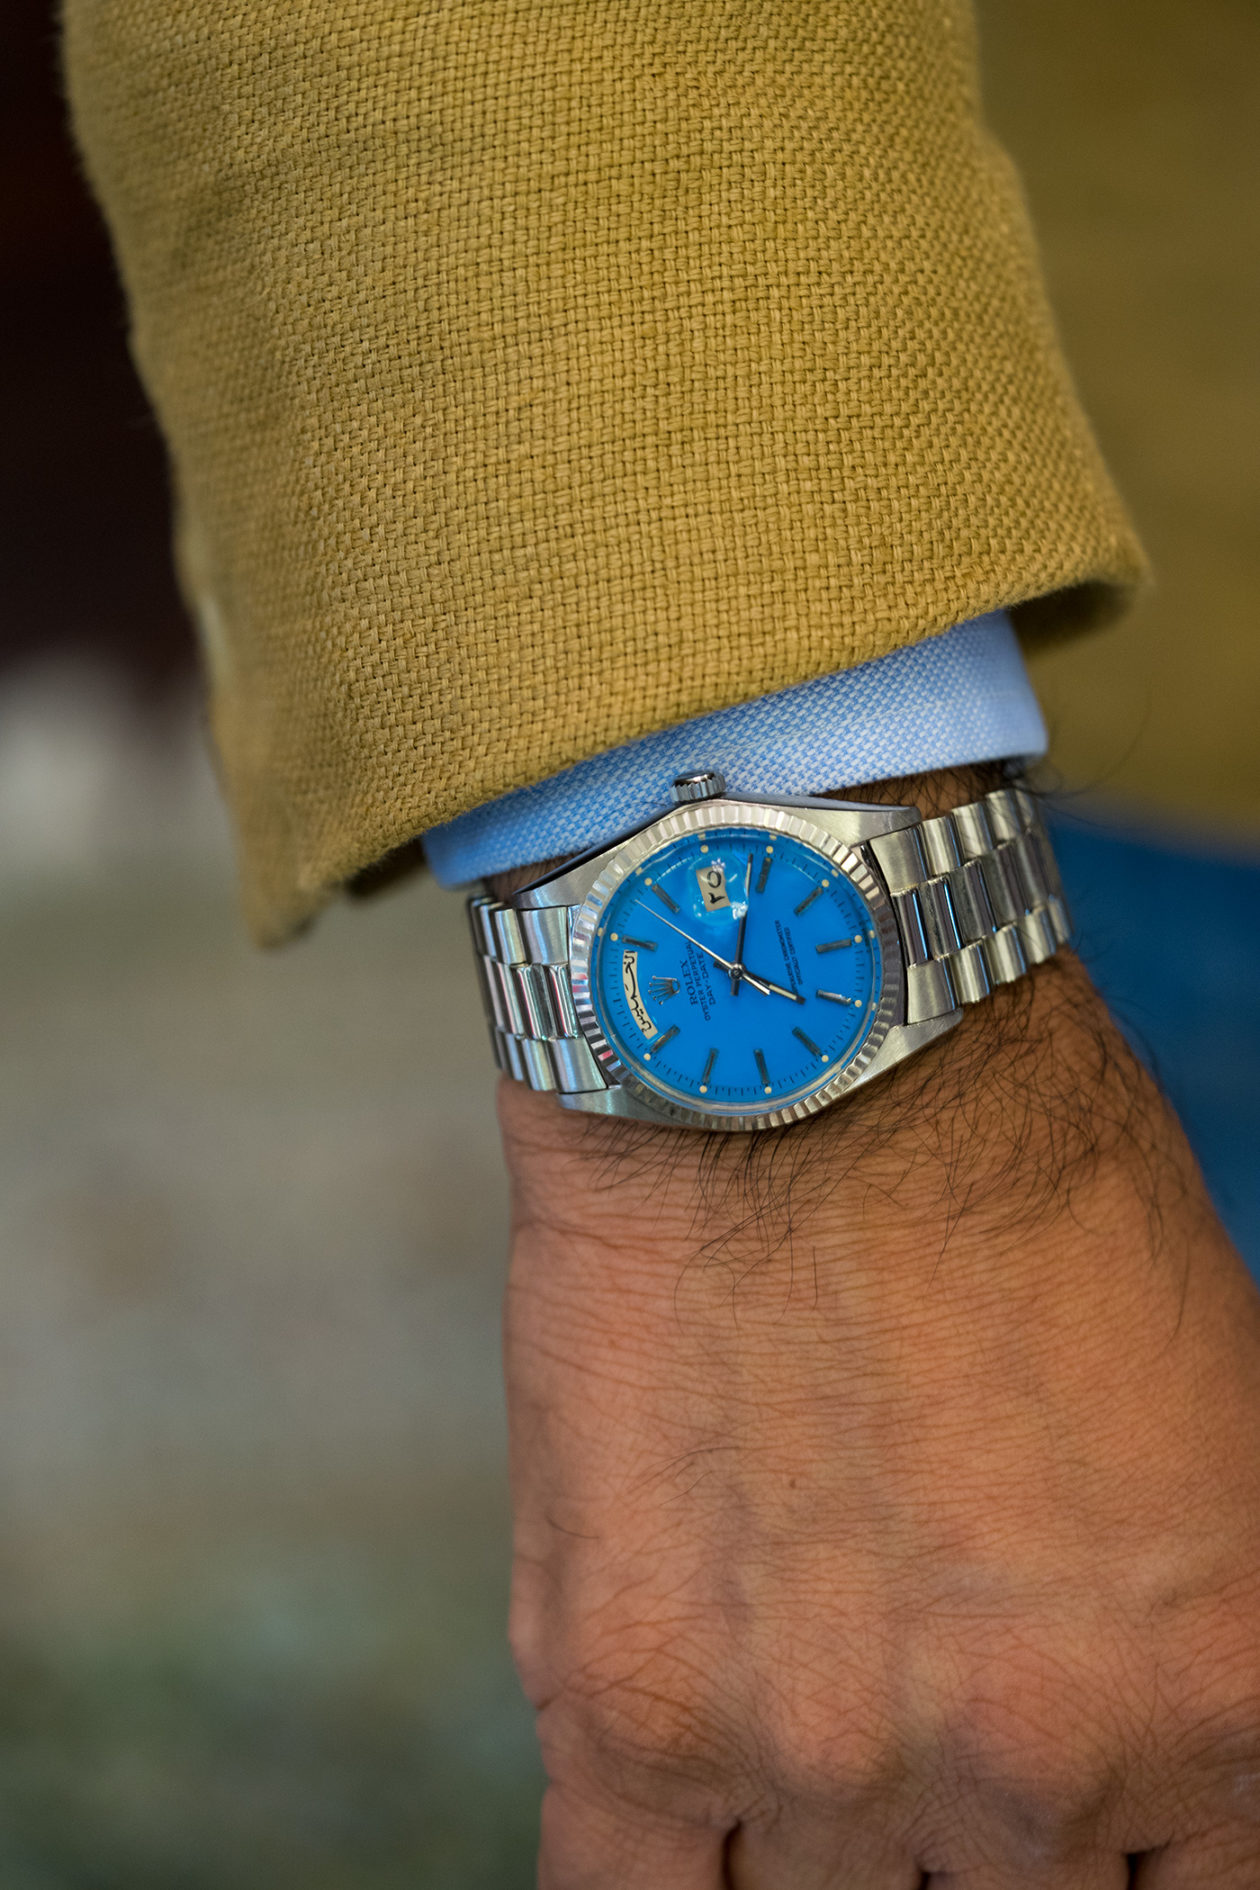 Rolex Day-Date "Arabic dial"